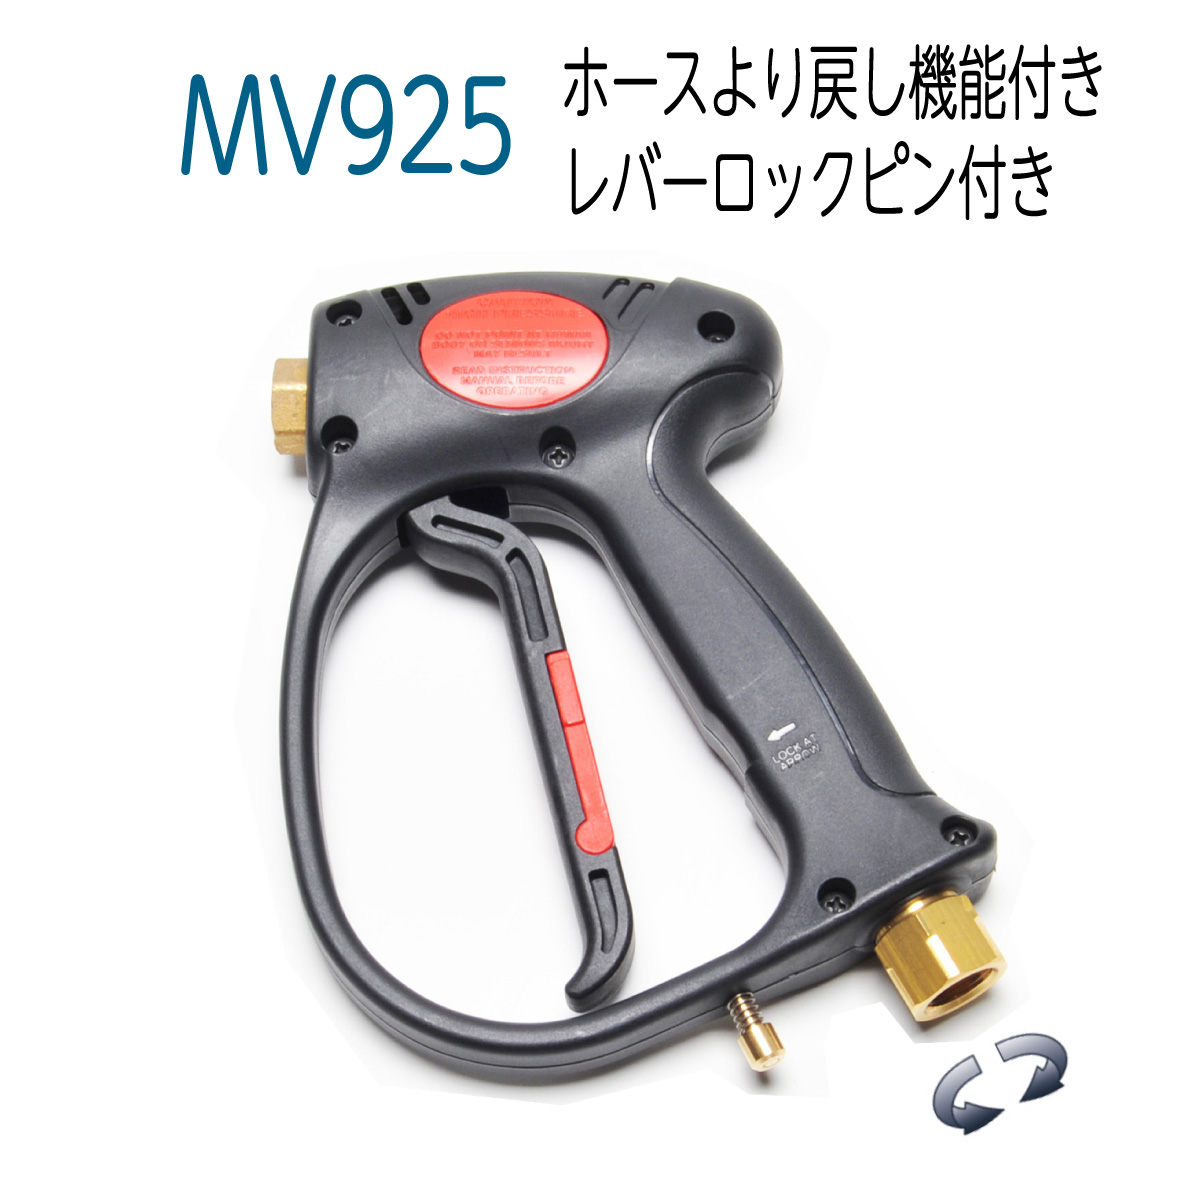 MV925 SW高圧洗浄機 トリガーガン 格安販売中